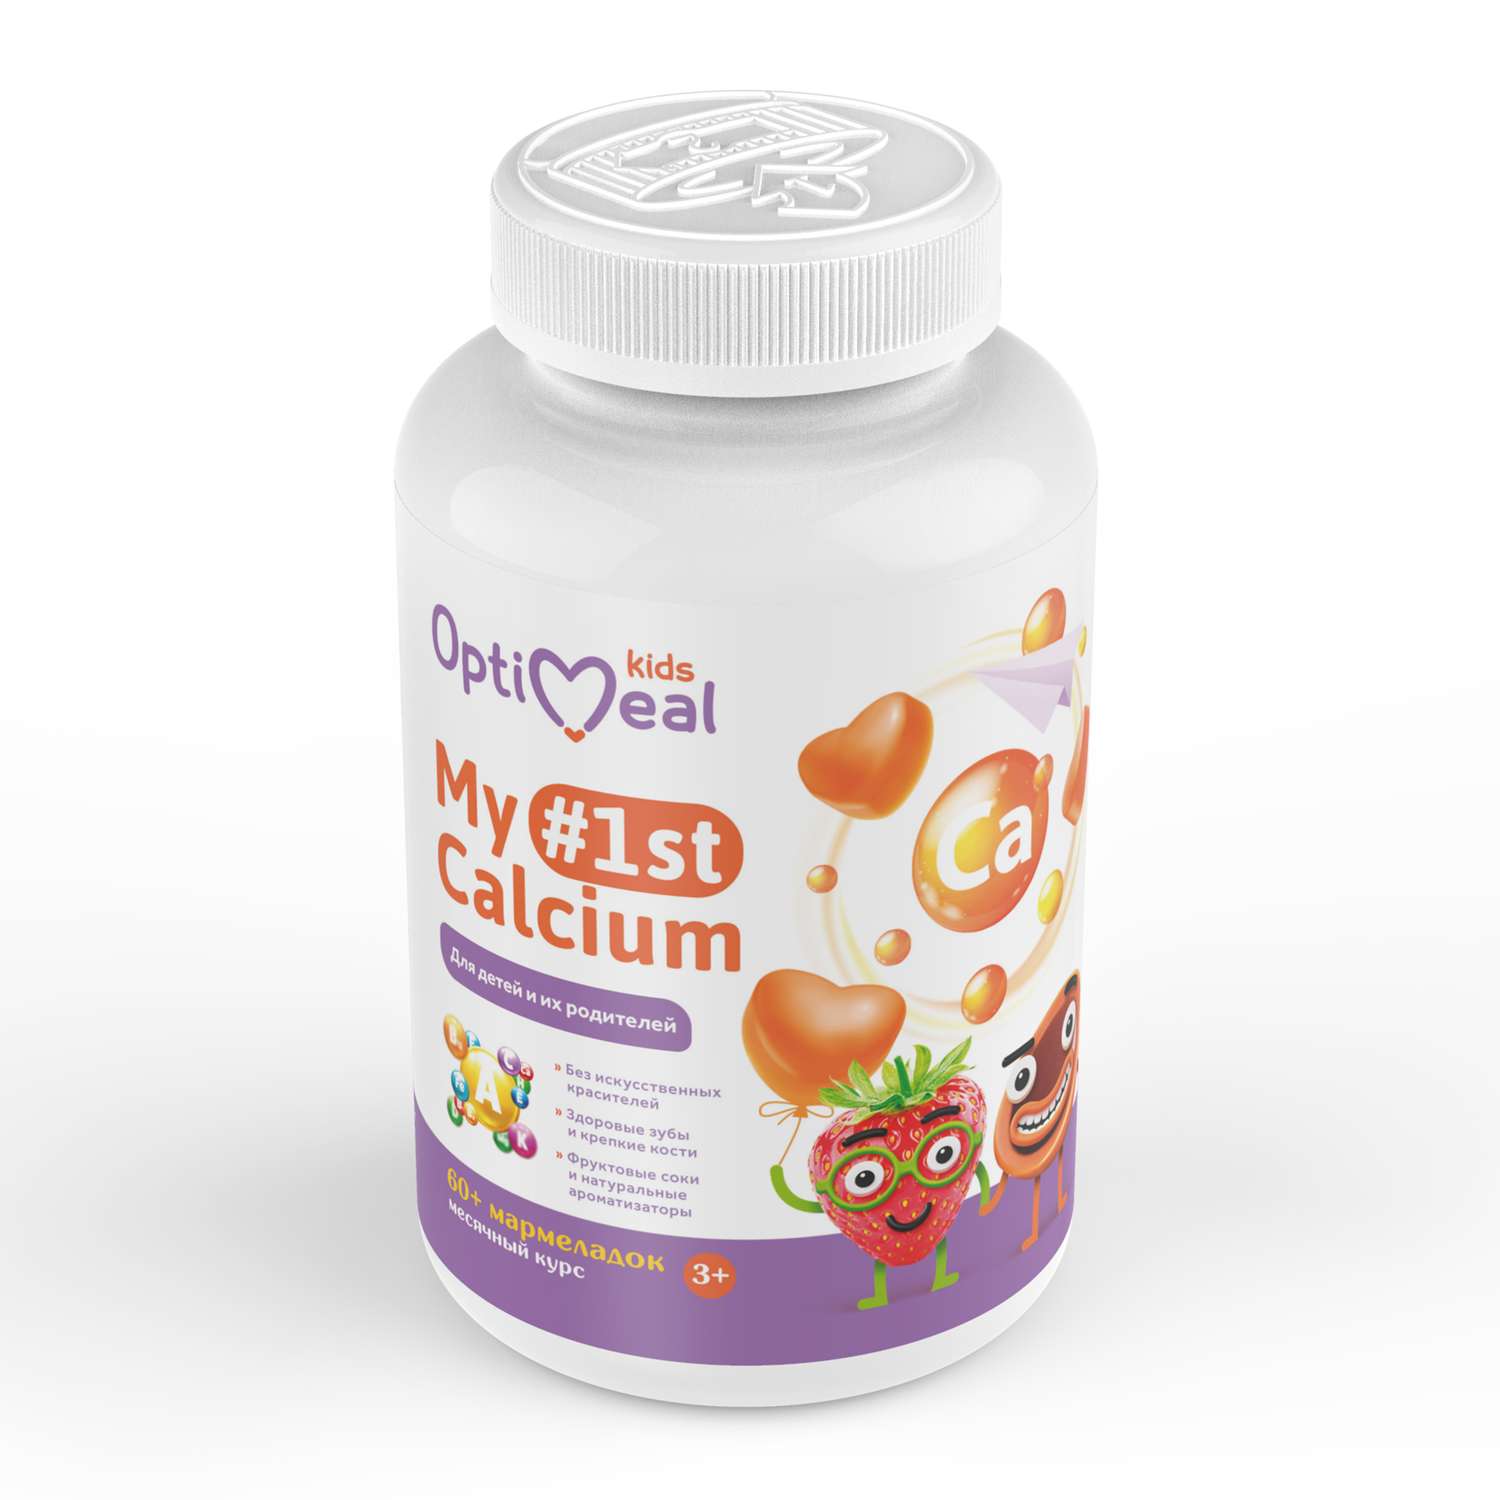 Биологически активная добавка OptiMeal My 1st calcium с кальцием клубника-карамель 60мармеладок - фото 2